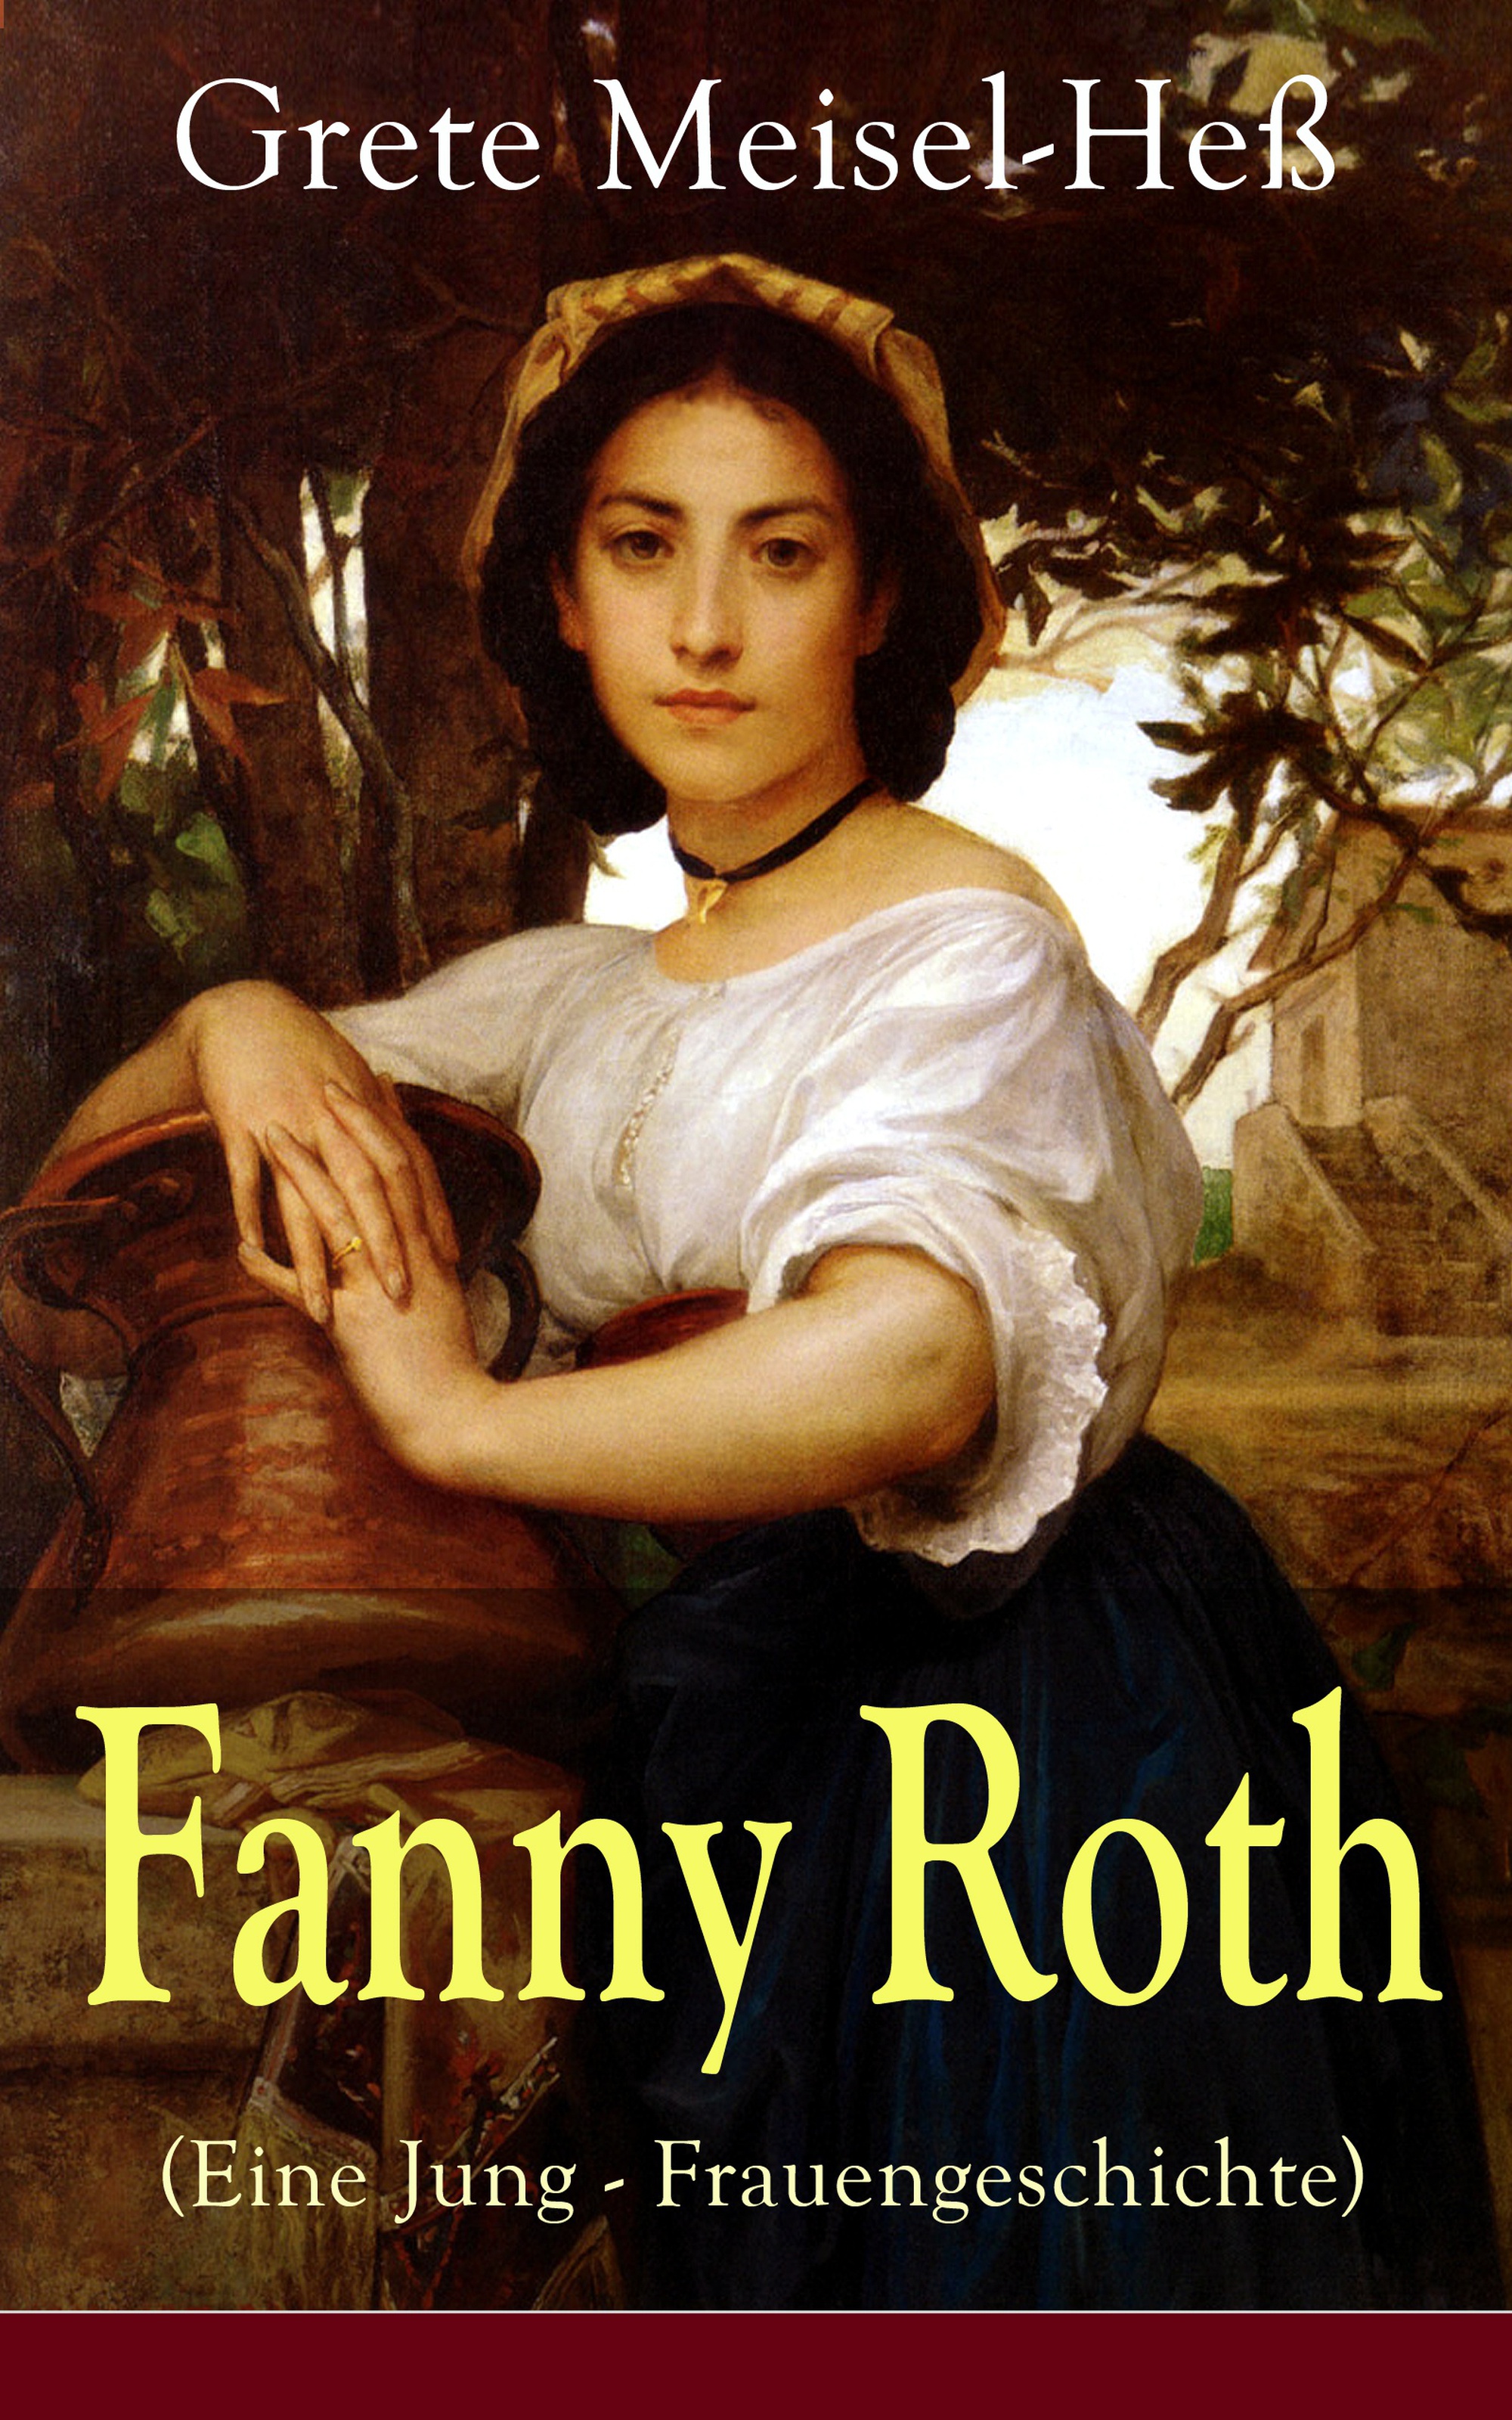 Grete Meisel-Heß Fanny Roth (Eine Jung - Frauengeschichte)